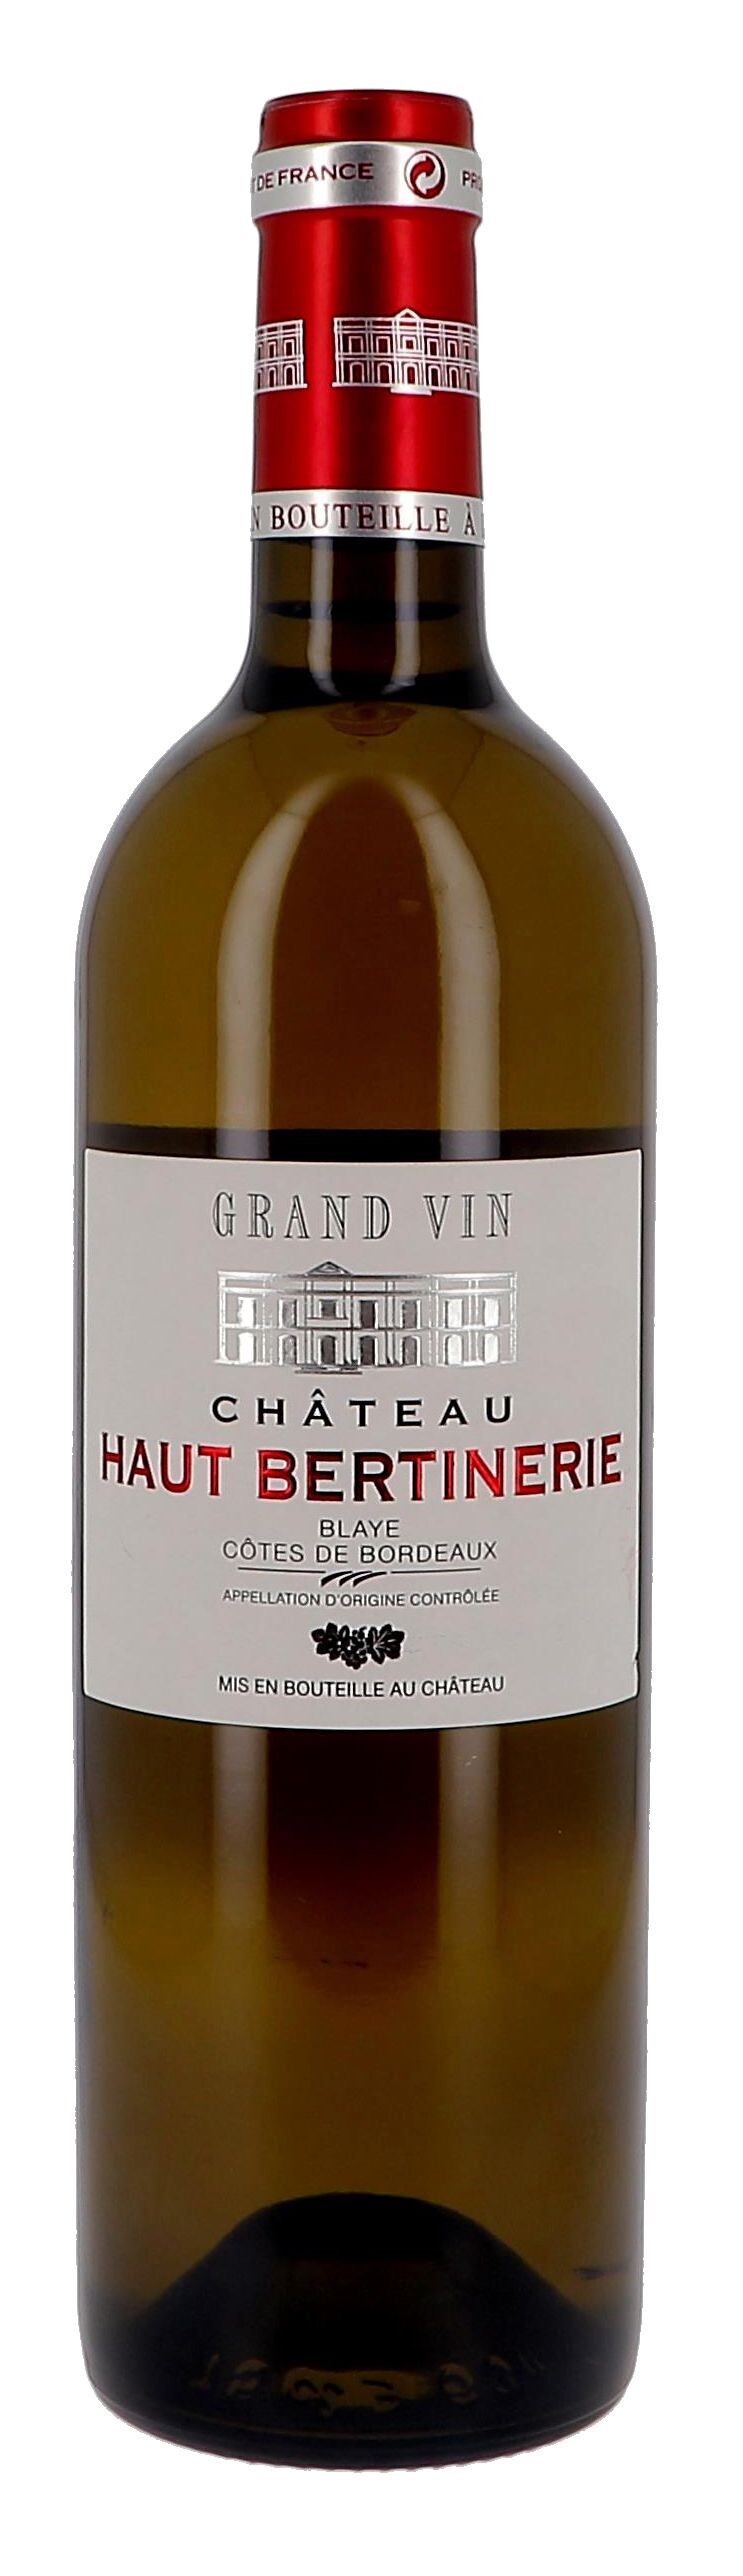 Chateau Haut-Bertinerie white 75cl 2017 Blaye Cotes de Bordeaux